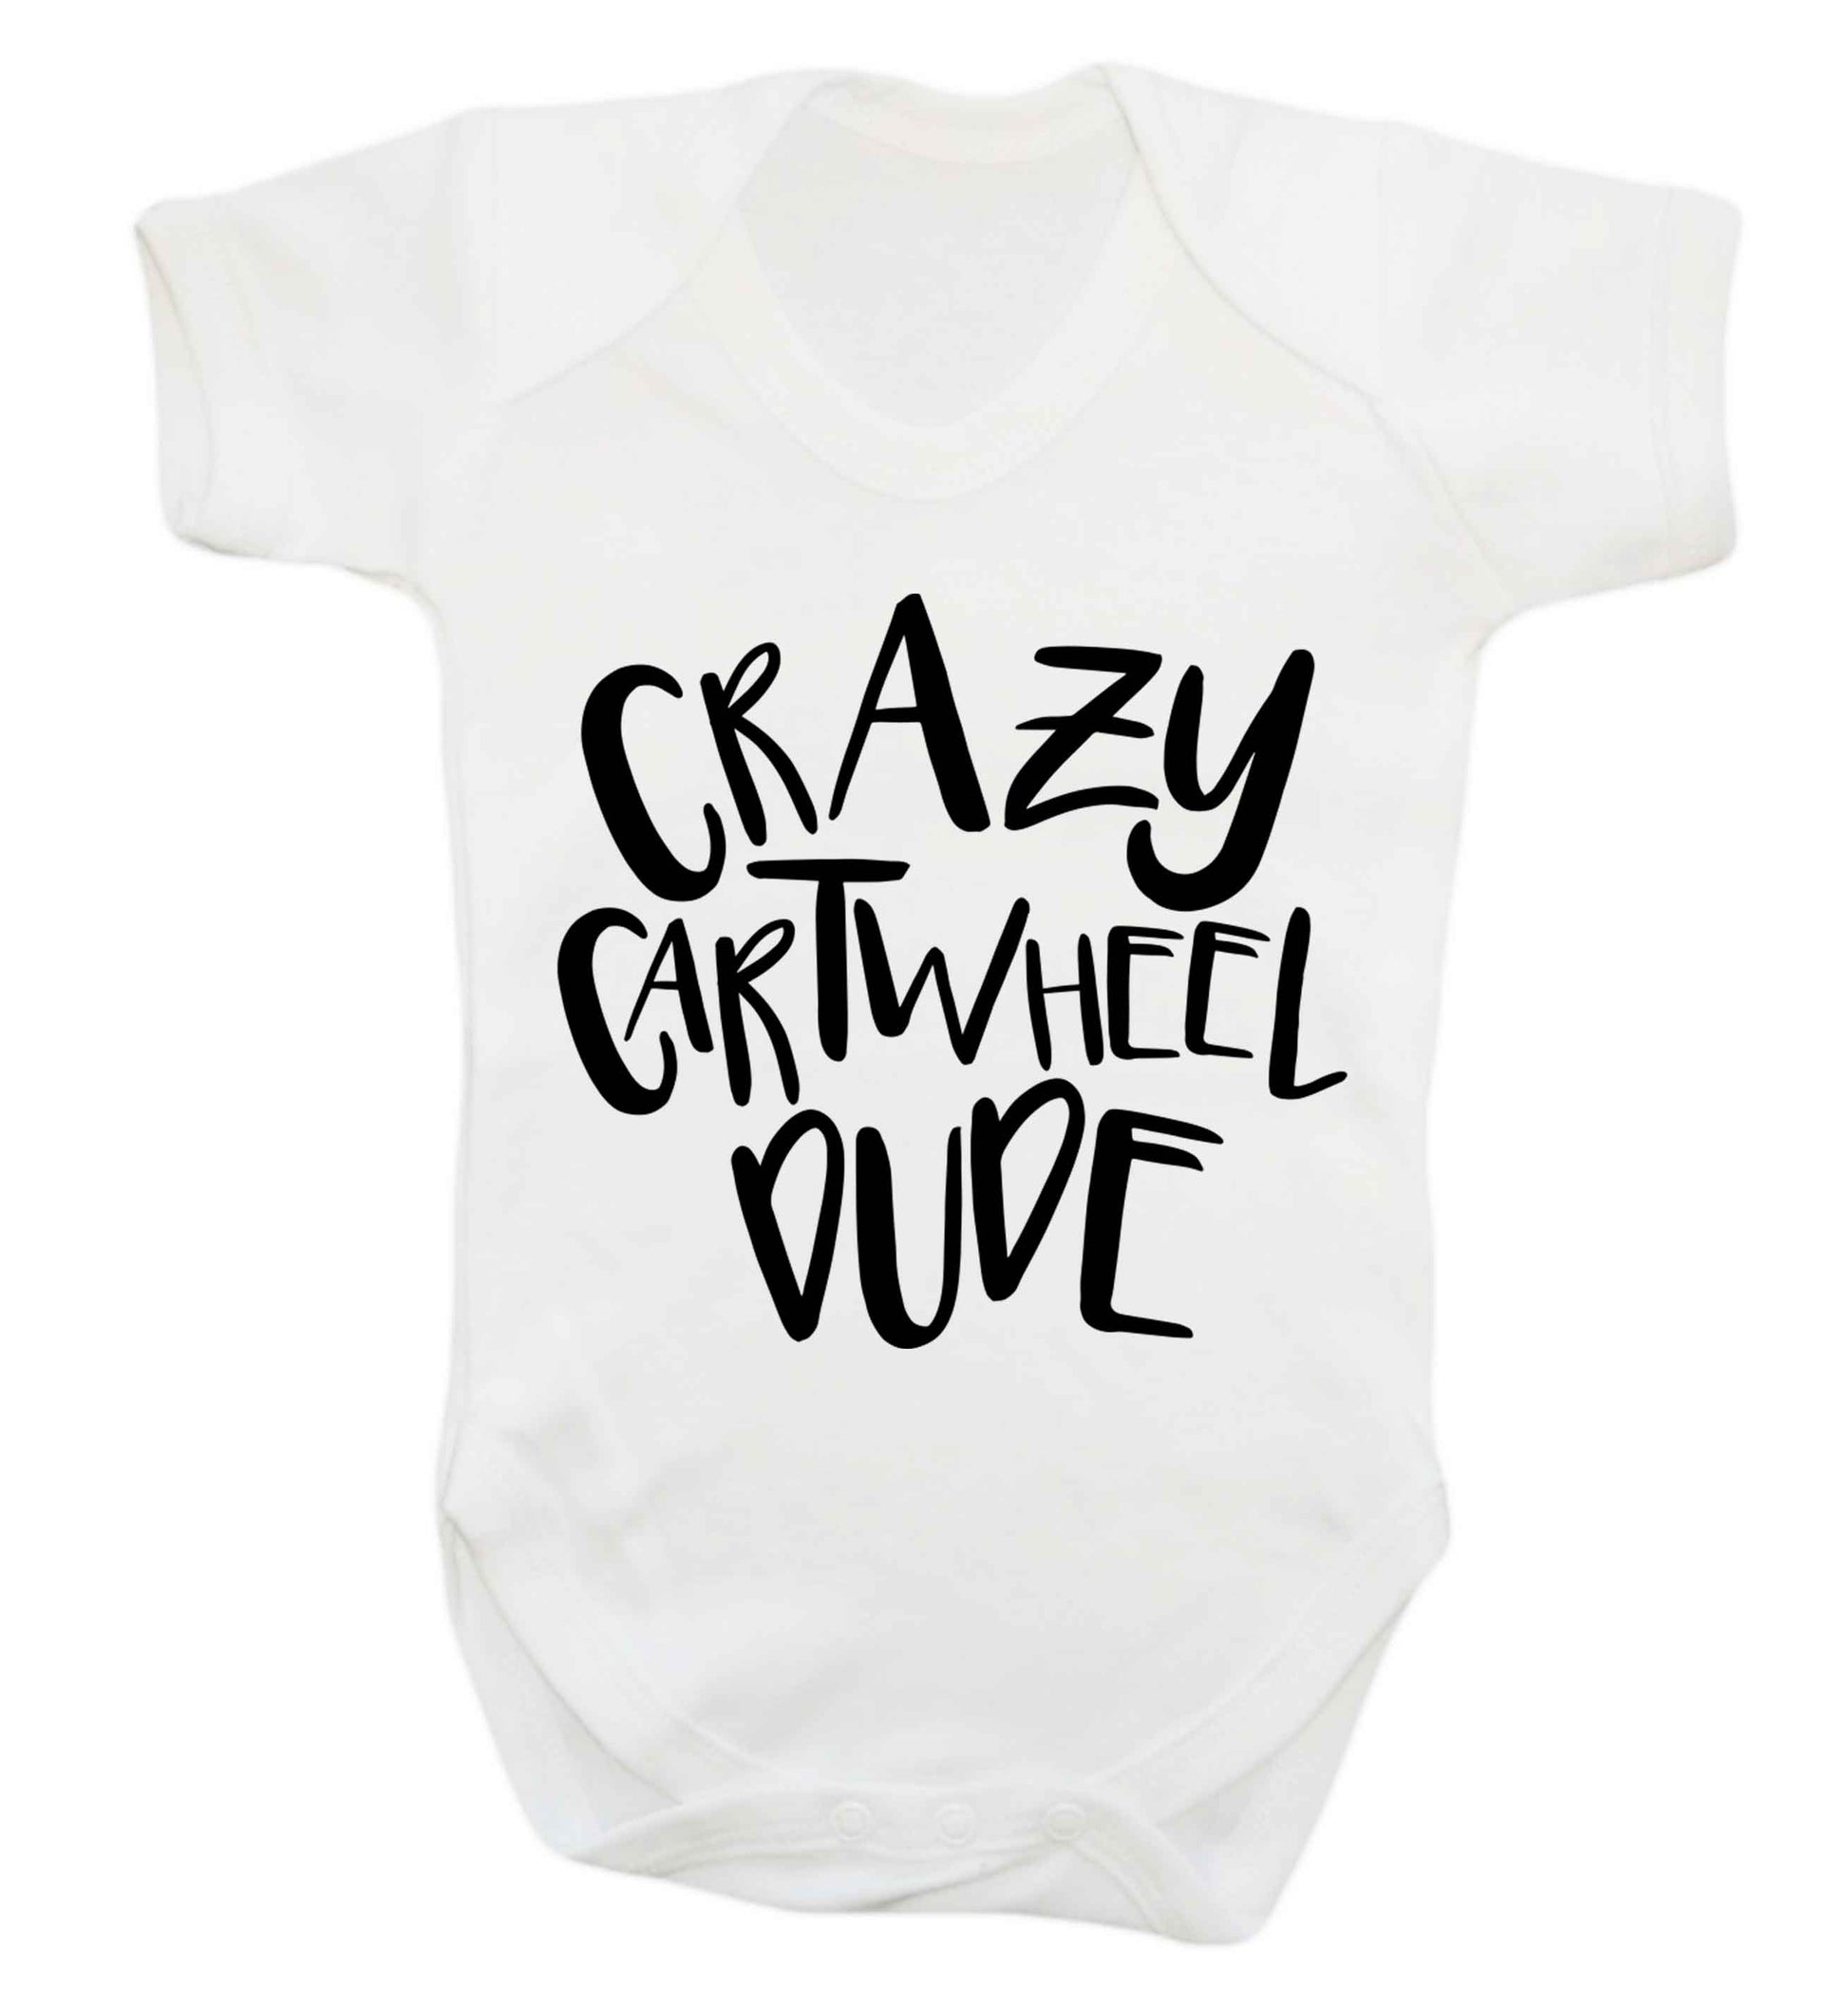 Crazy cartwheel dude Baby Vest white 18-24 months